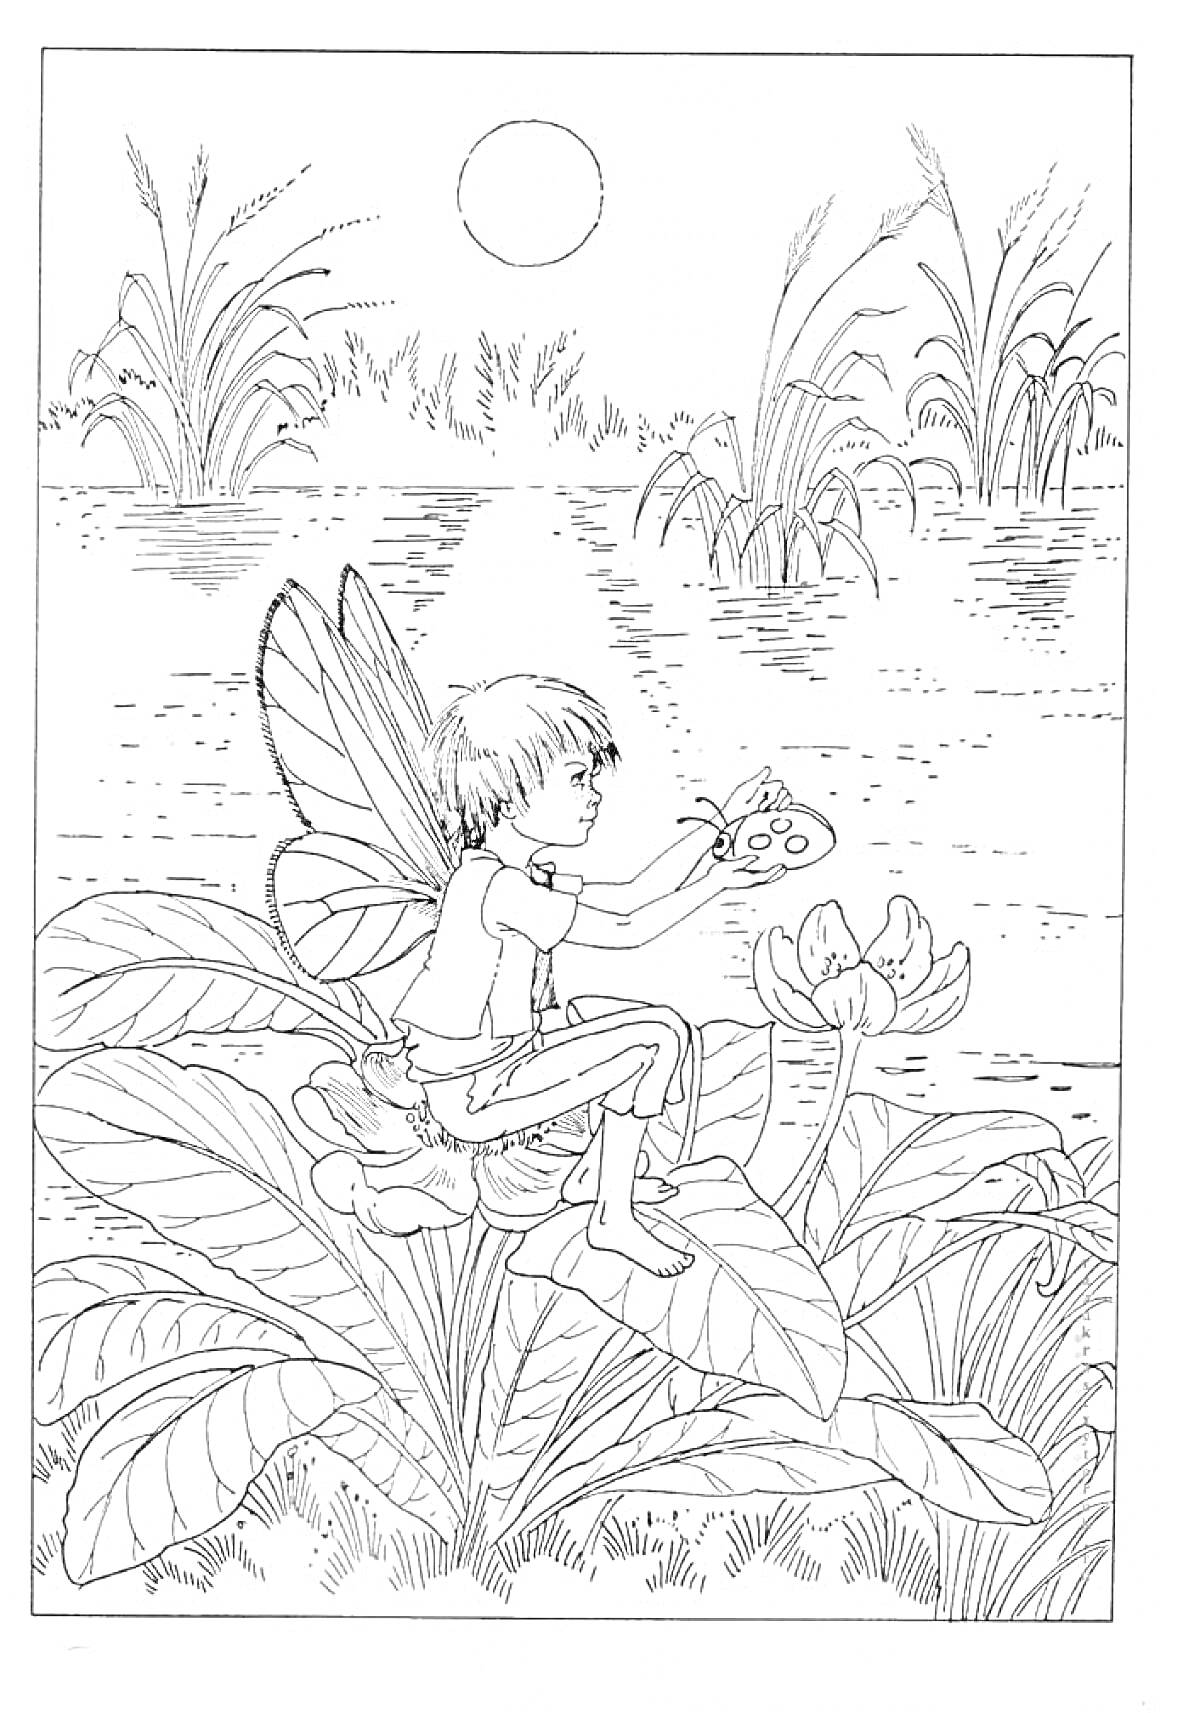 Эльф сидит на листке лотоса у пруда с растительностью, держащий бабочку